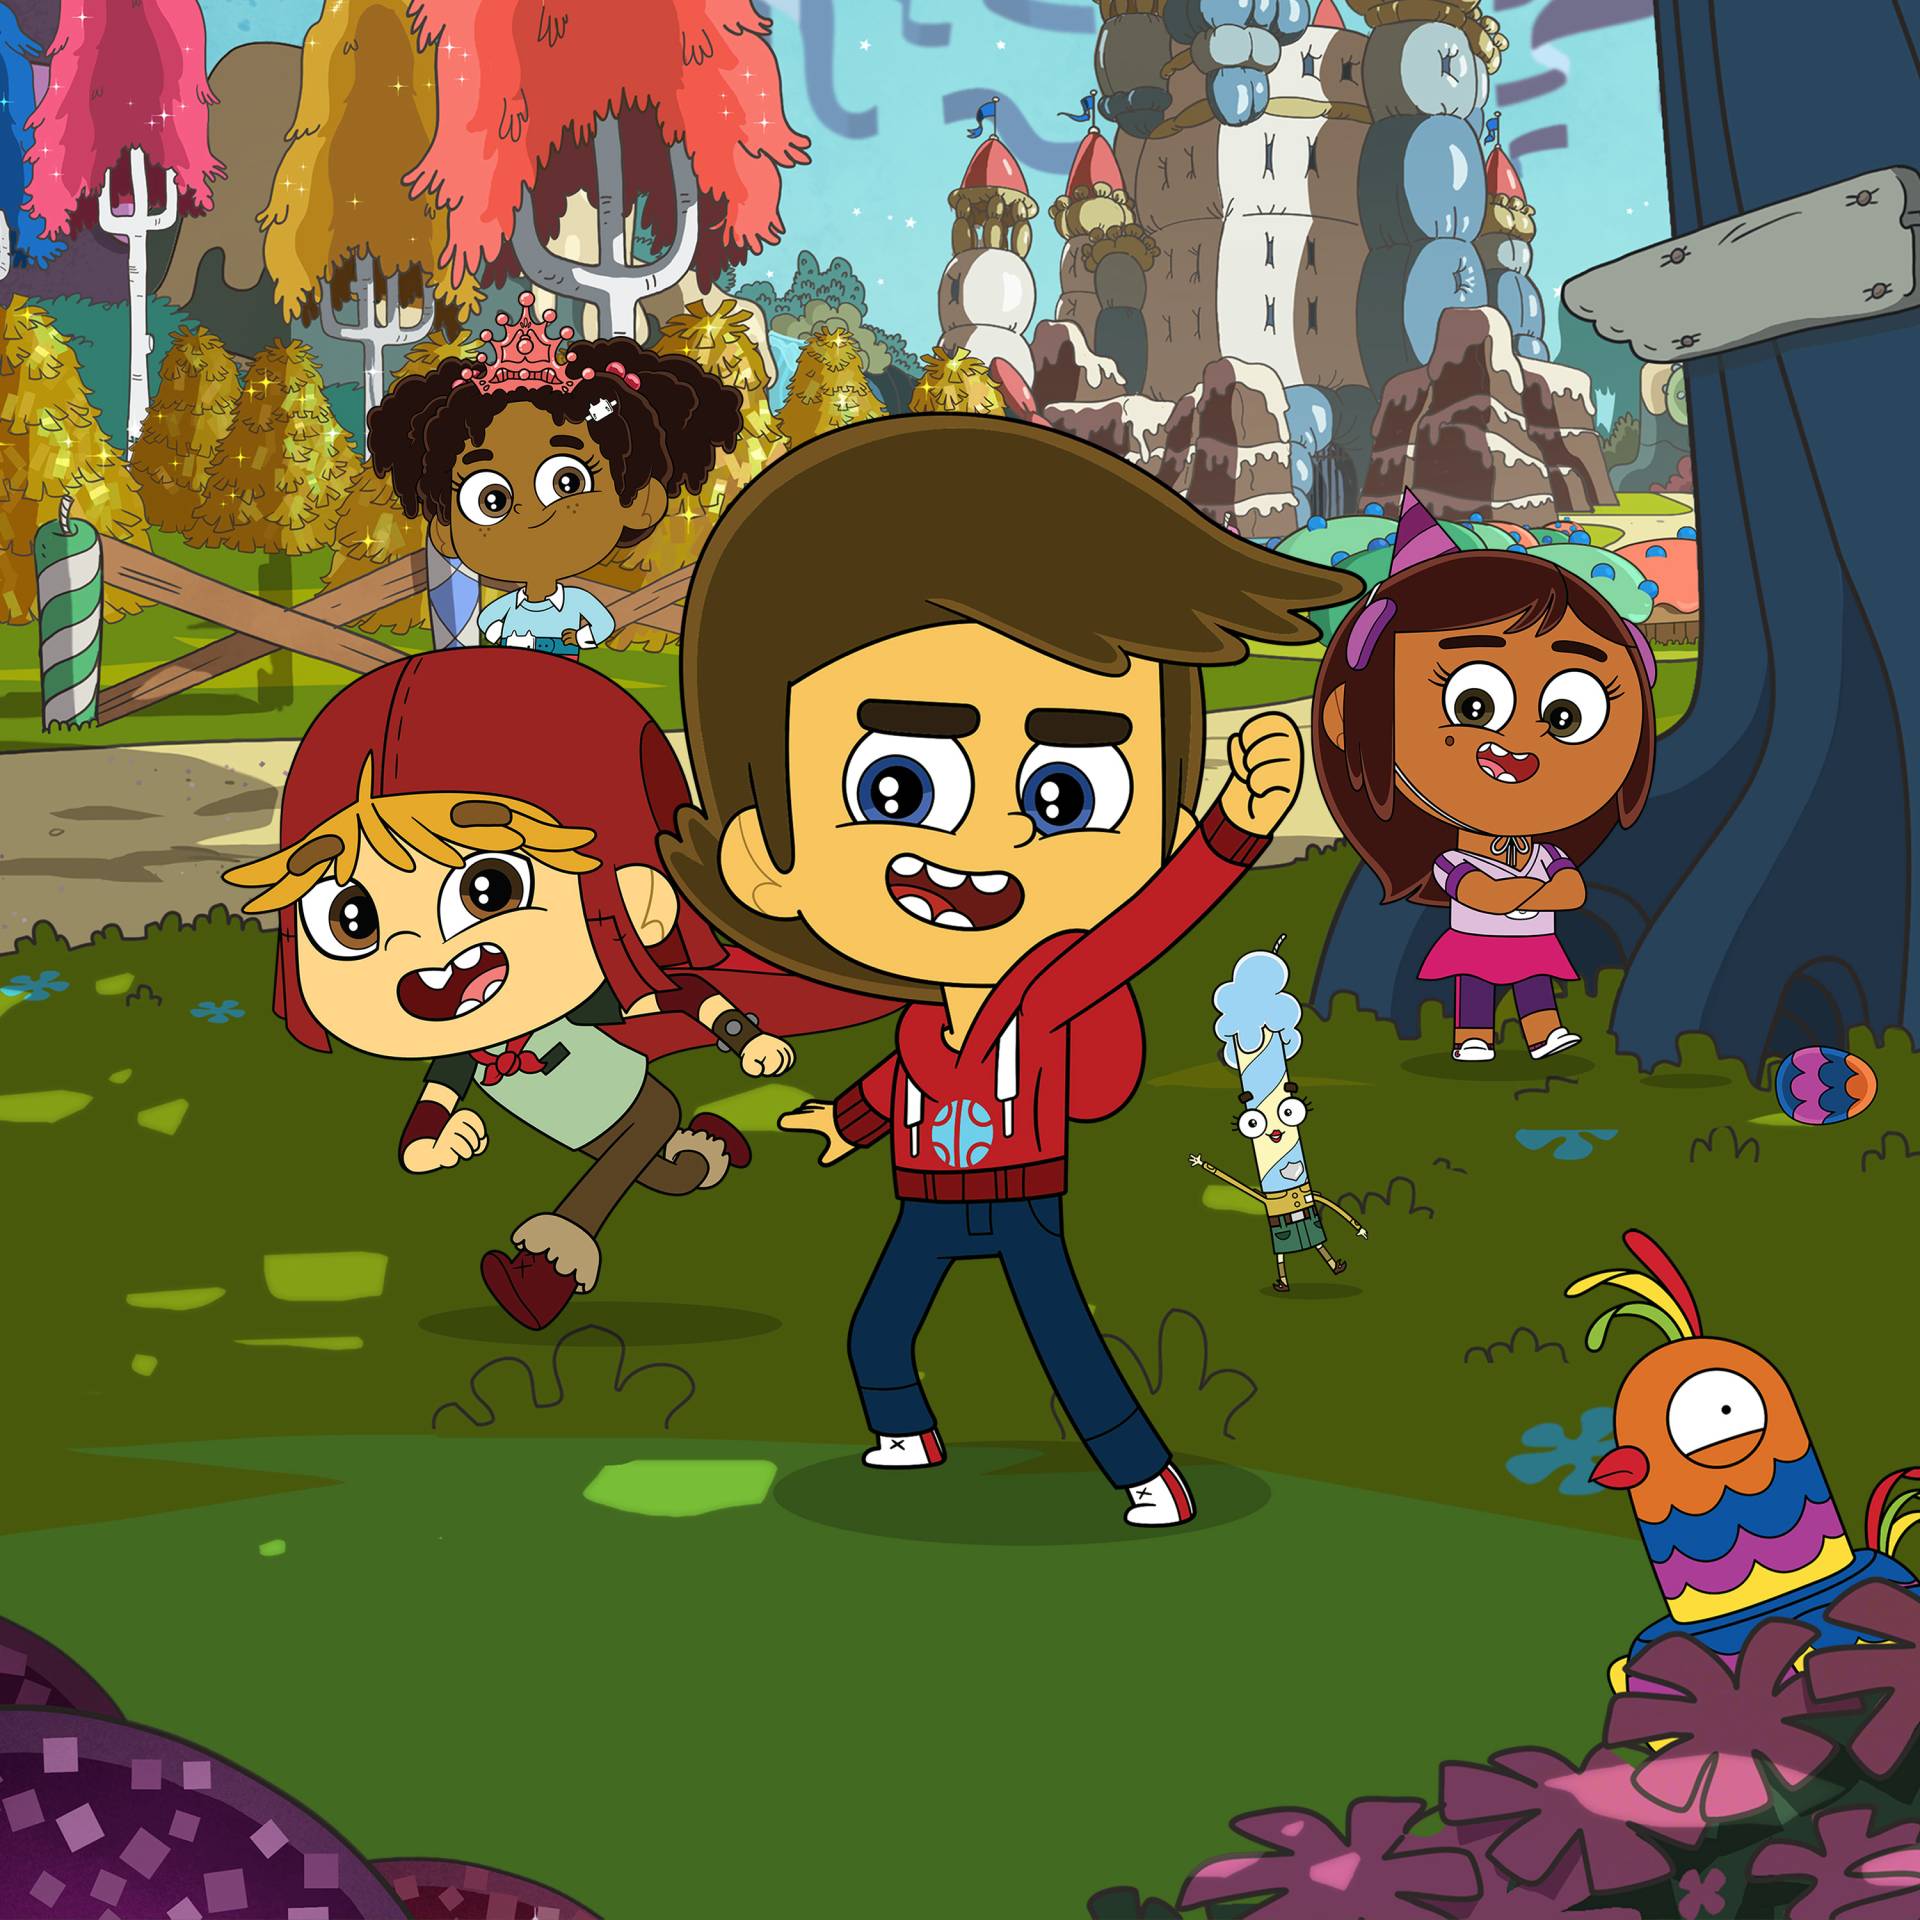 Companhia lança cruzeiro temático com personagens da Discovery Kids